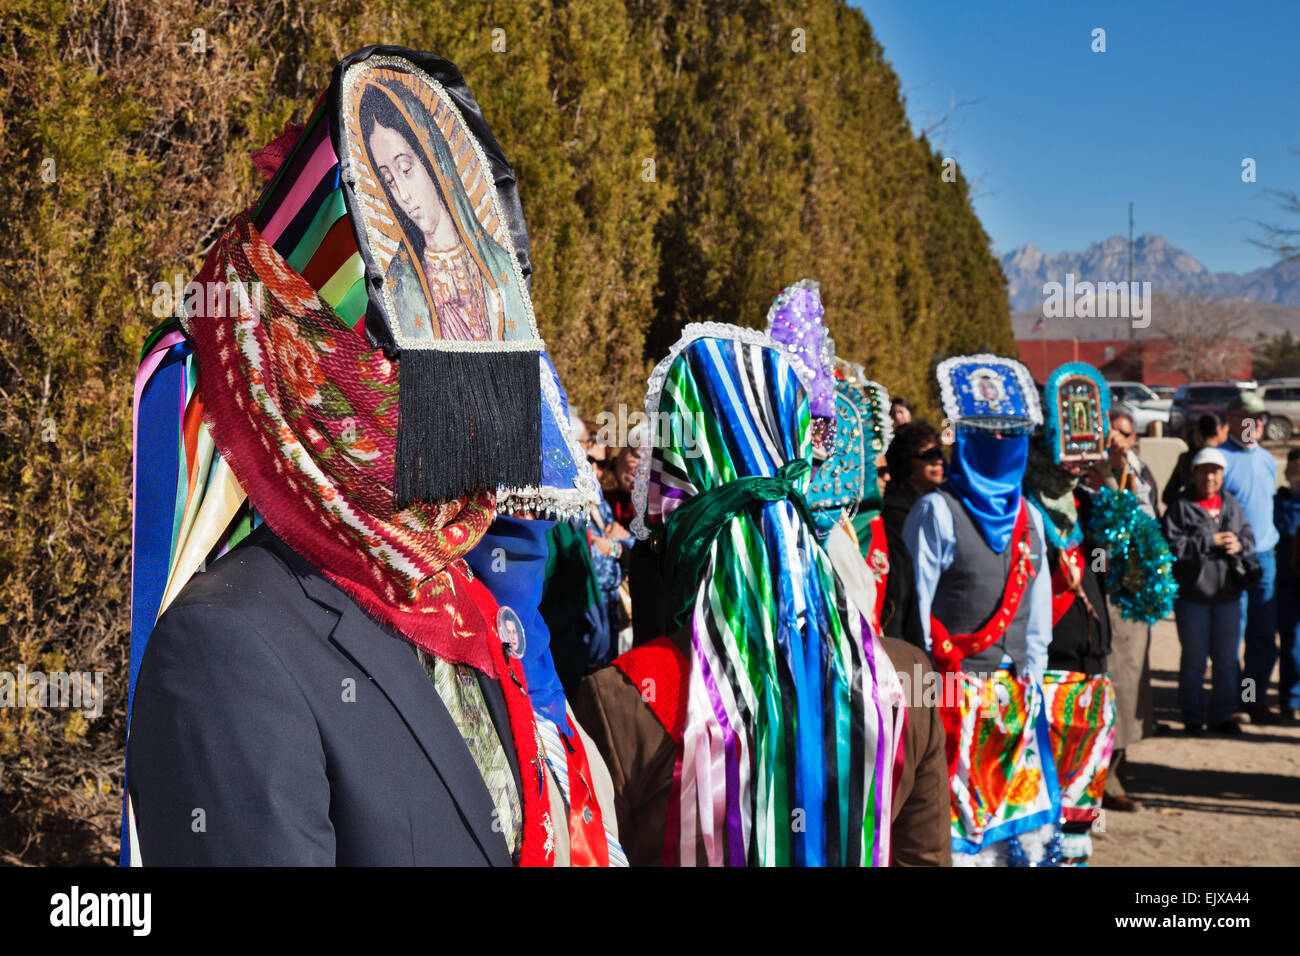 Habillés de couleurs vives et de pèlerins danseurs sont partout au cours de la célébration de la Vierge de Guadalupe Fête Banque D'Images